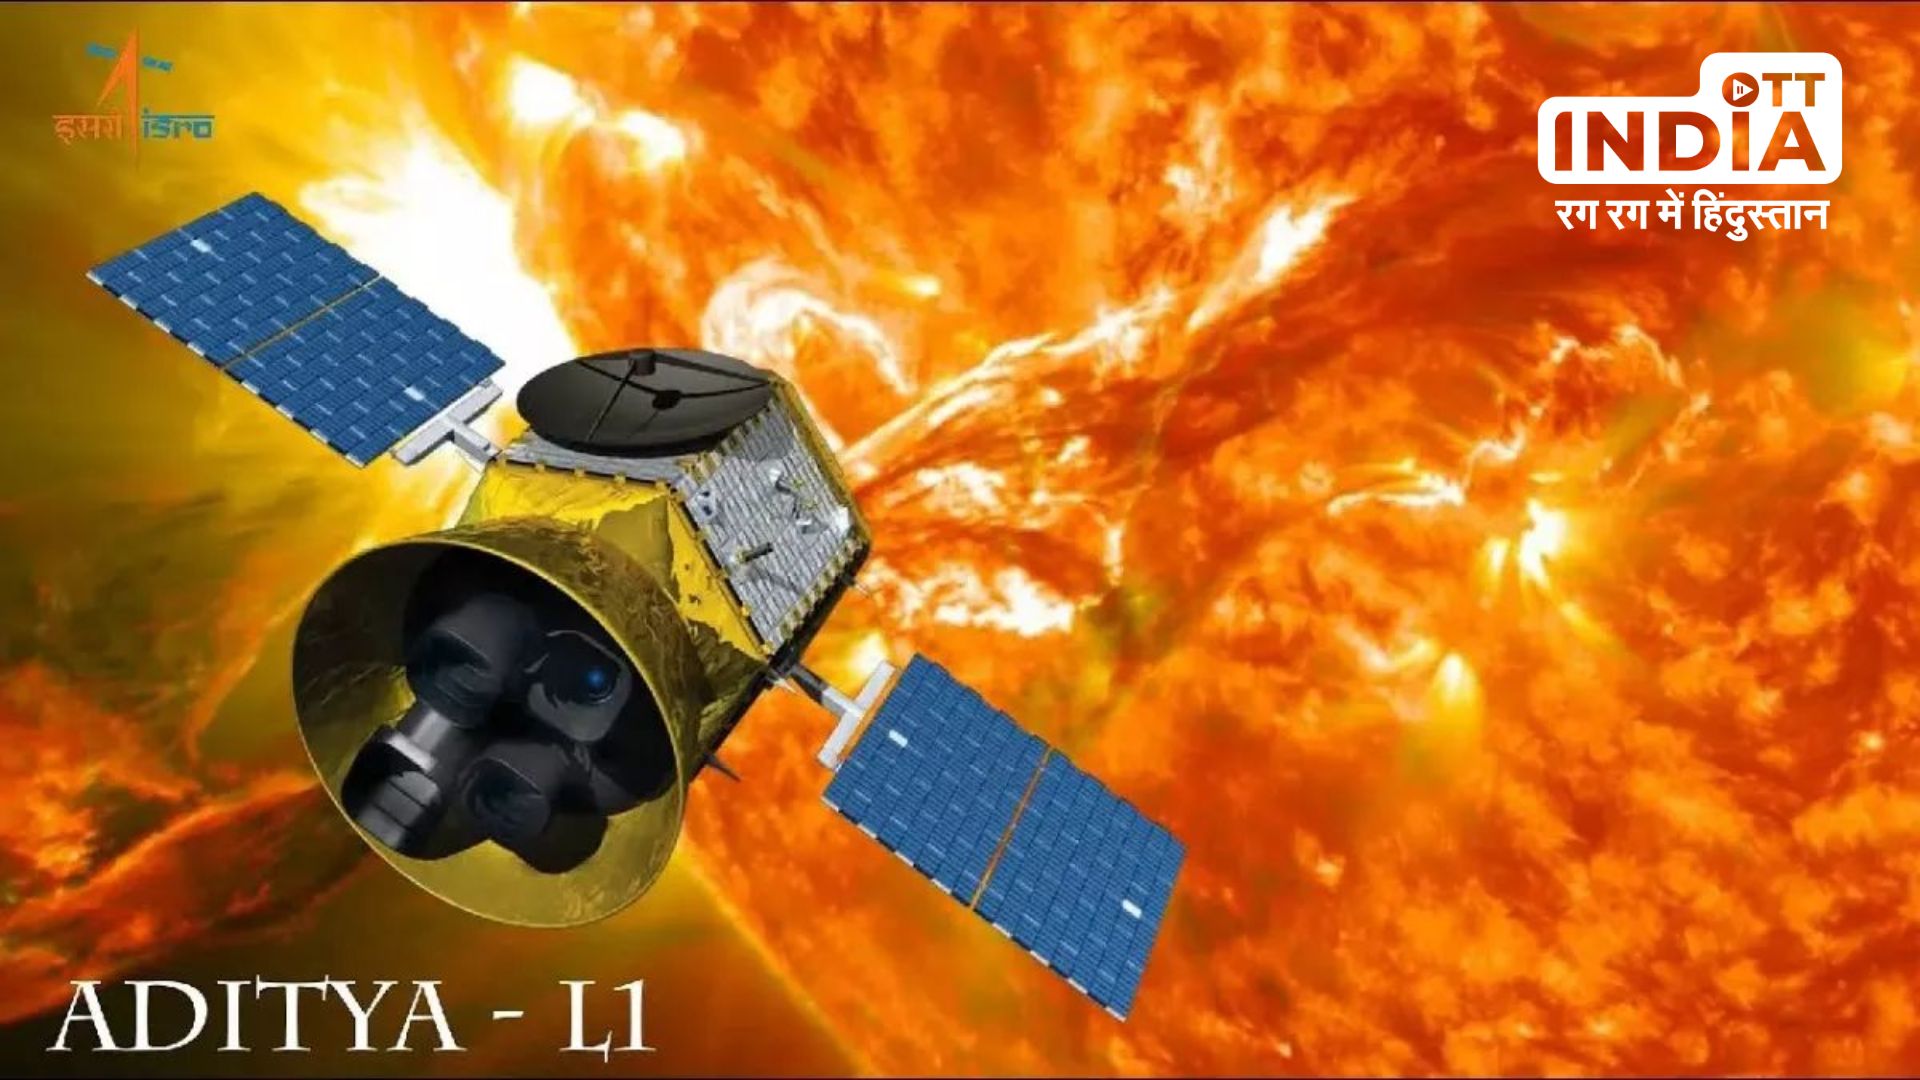 Aditya-L1 Mission : चांद के बाद अब सूर्य पर भी फतह करने को तैयार भारत, कई रहस्यों से उठेगा पर्दा…